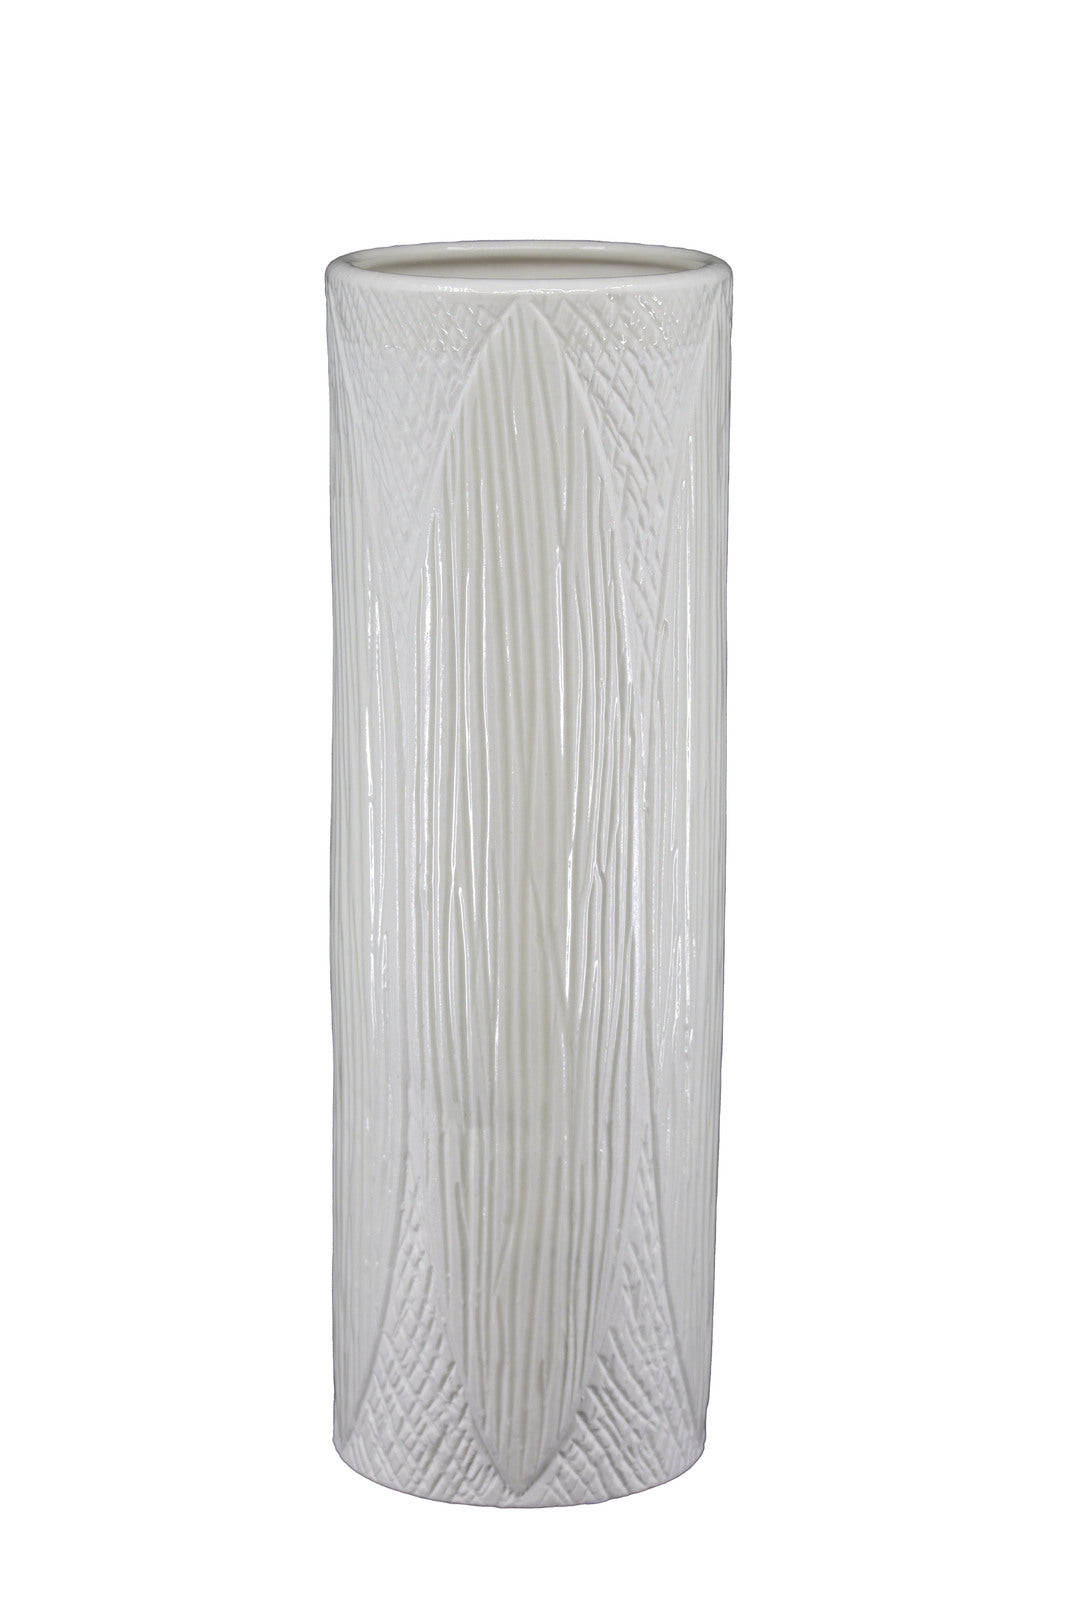 Kapok Vase Tall - White